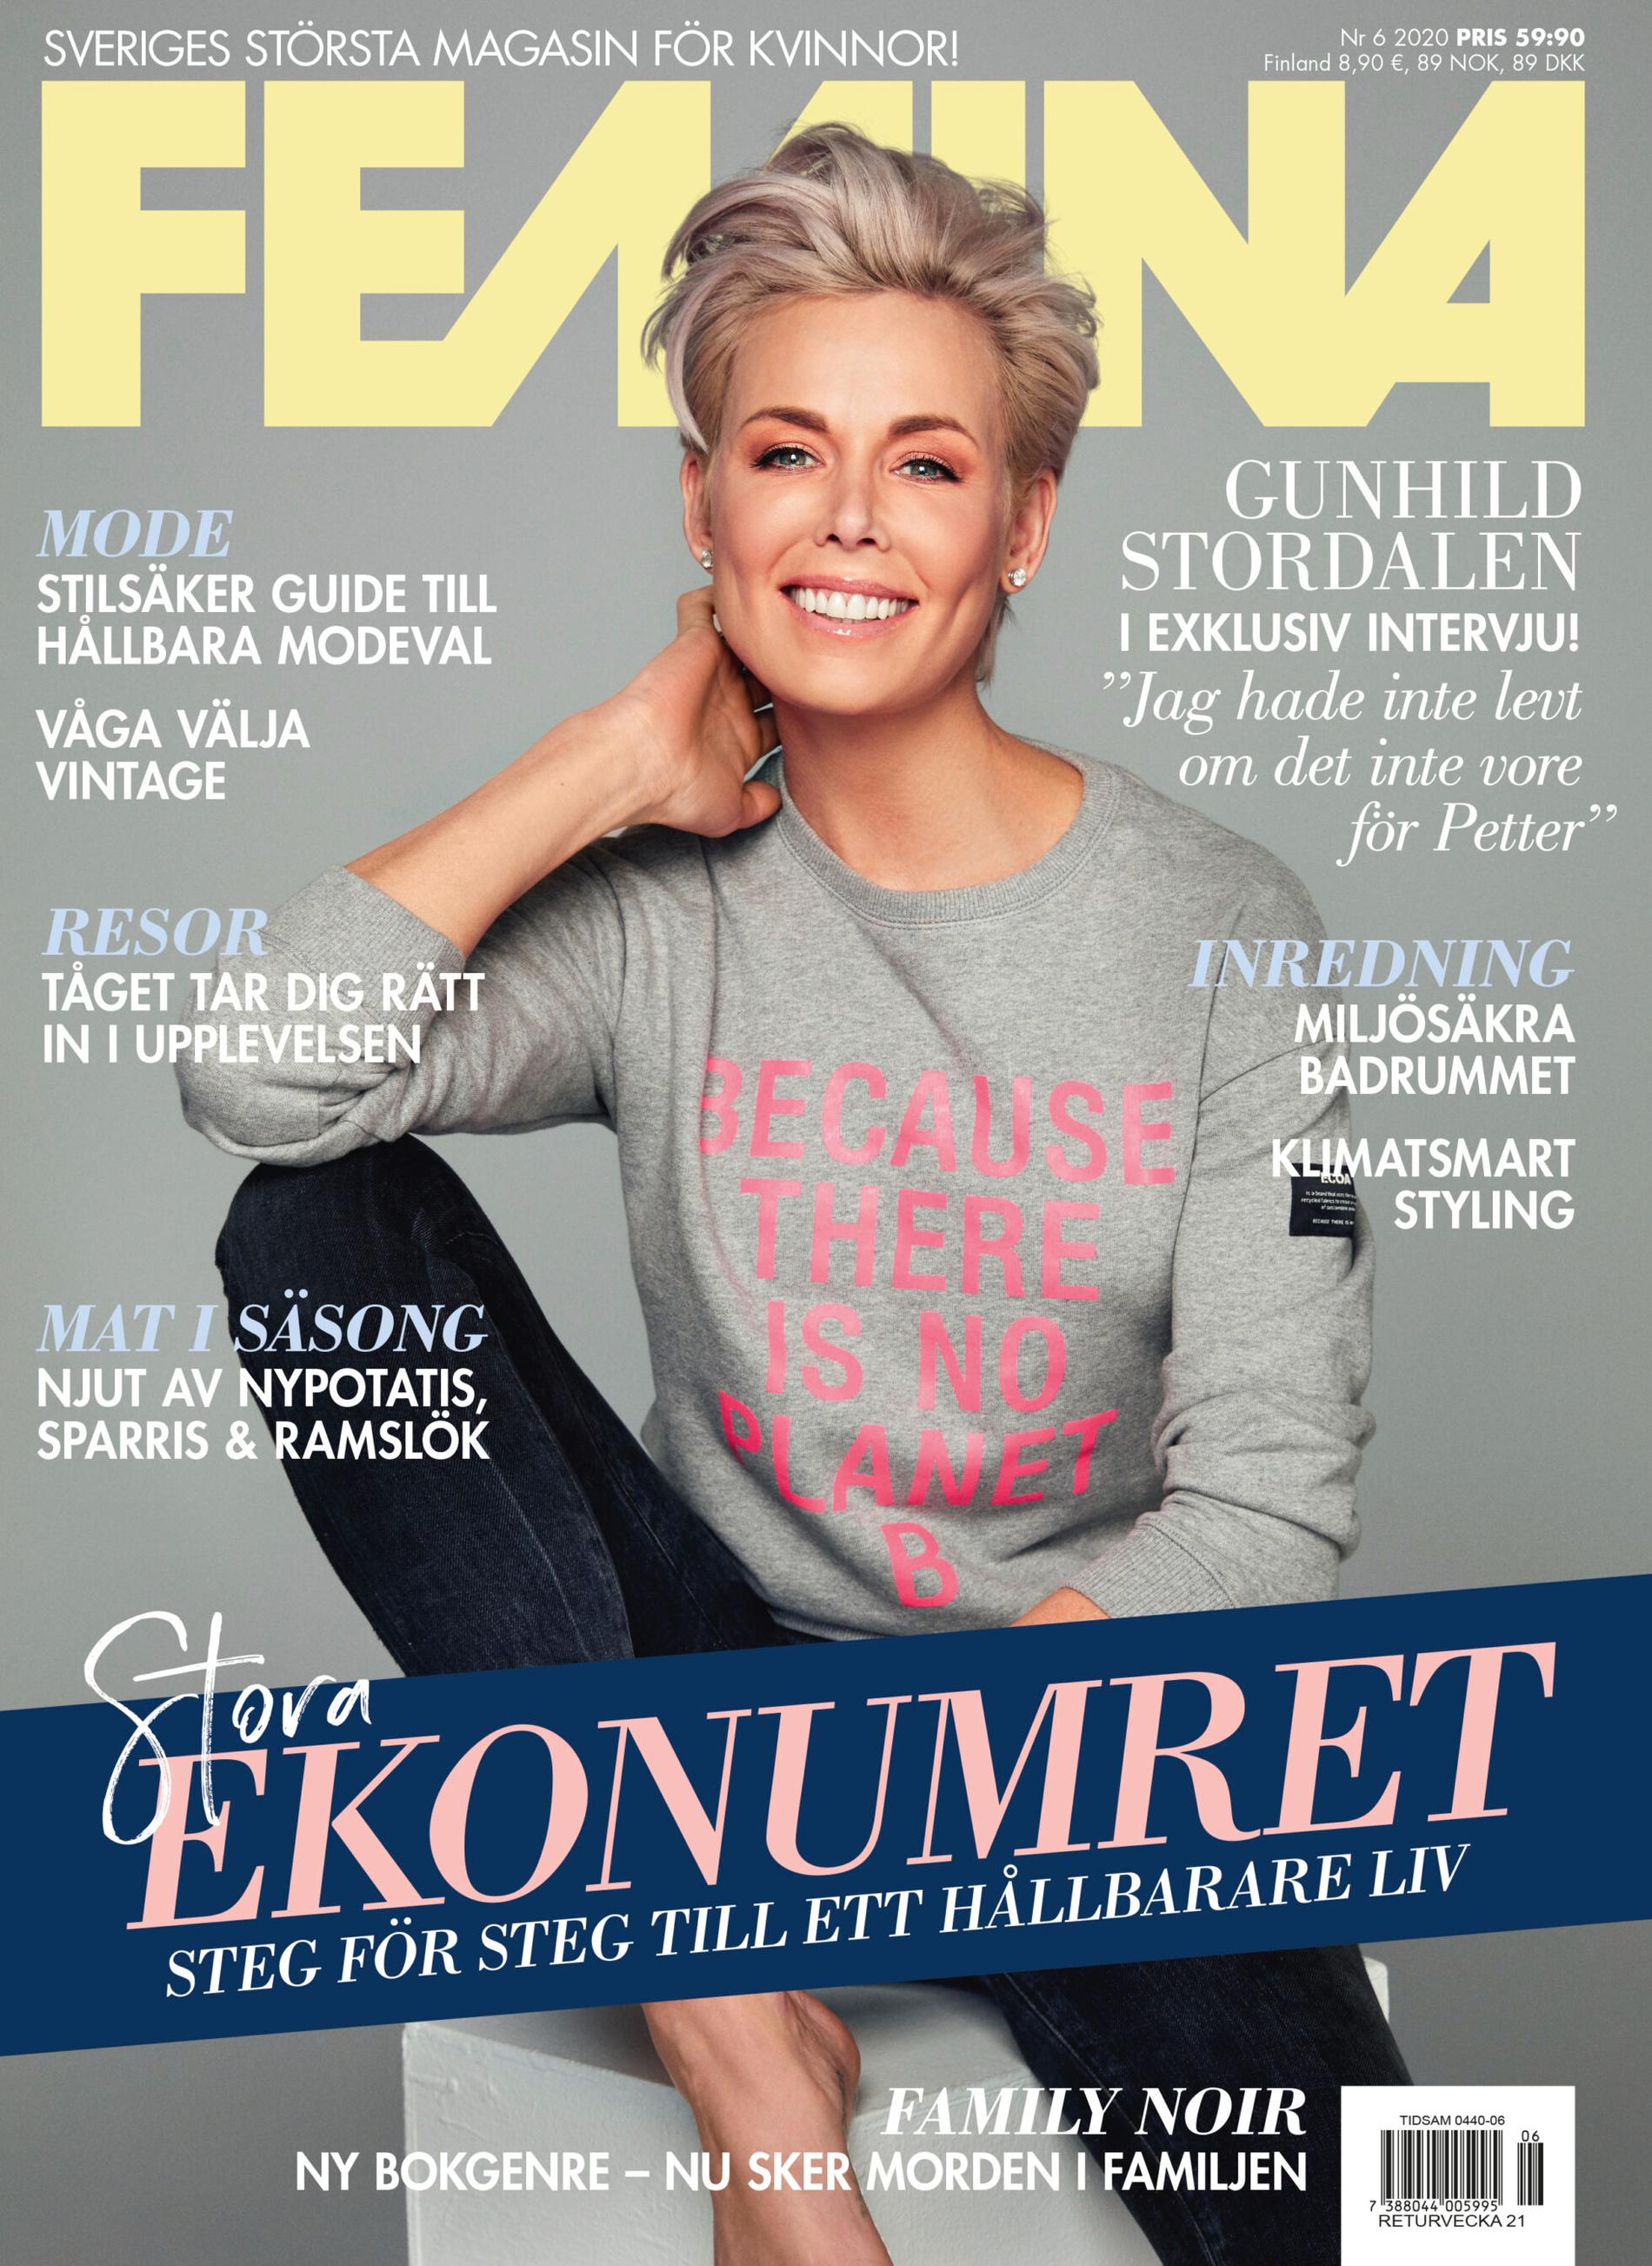 Gunhild Stordalen intervjuas i senaste numret av Femina